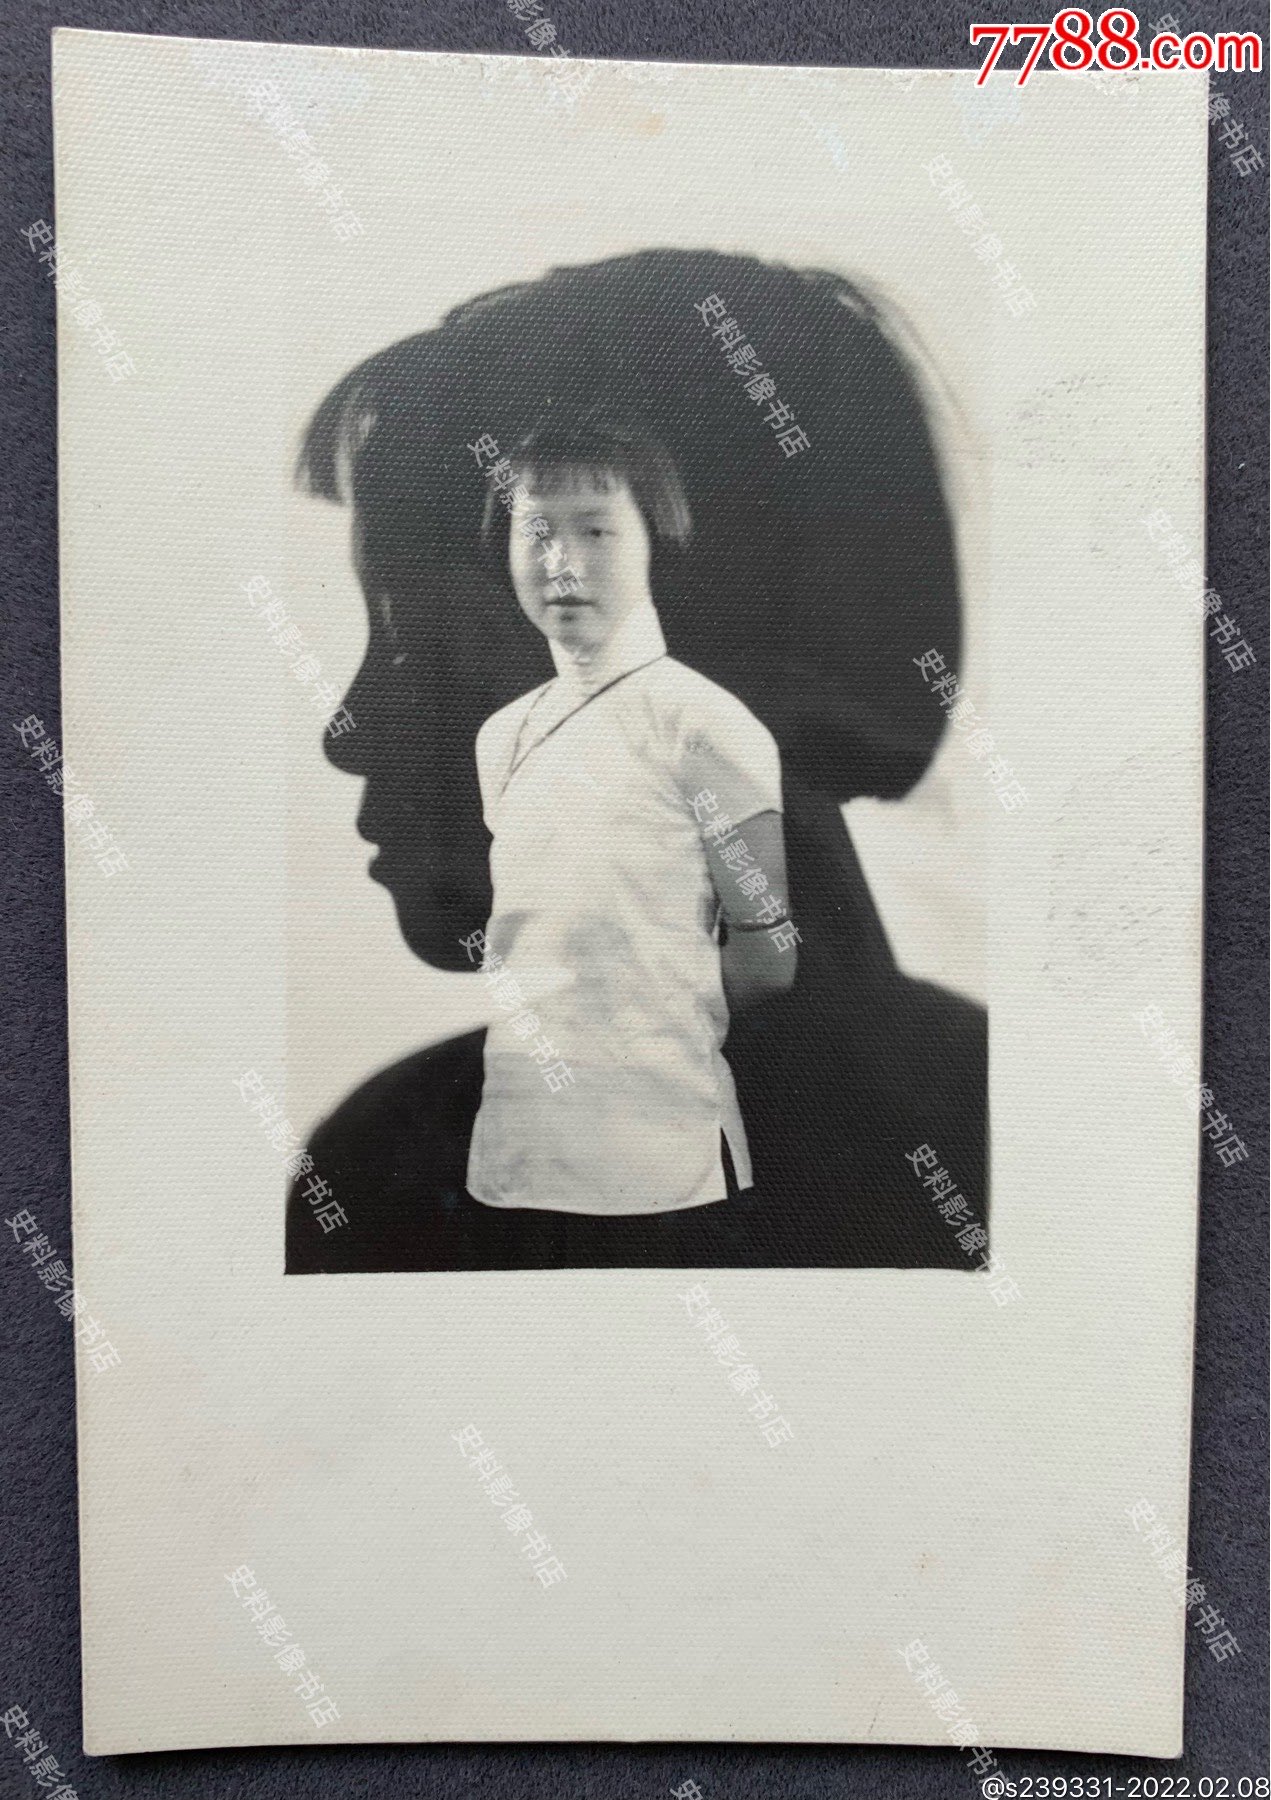 民国时期重影摄像作品短发少女肖像照一枚使用麻纹厚相纸